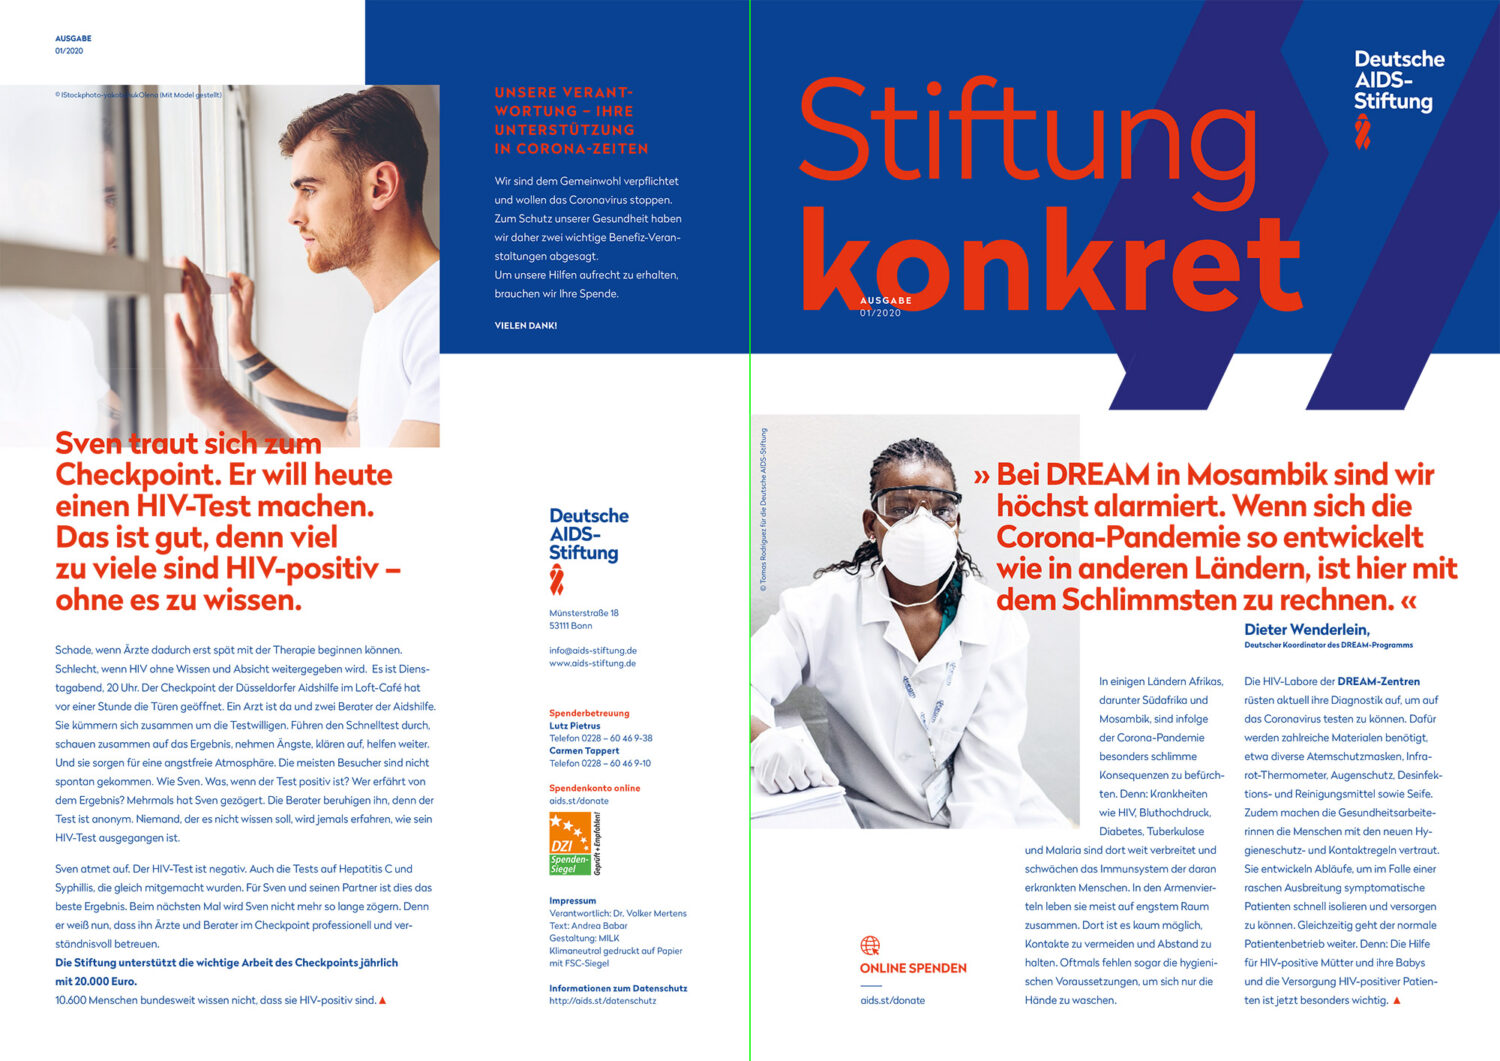 Deutsche AIDS-Stiftung Corporate Design – Anwendungsbeispiel Magazin „Konkret“, Quelle: Deutsche AIDS-Stiftung